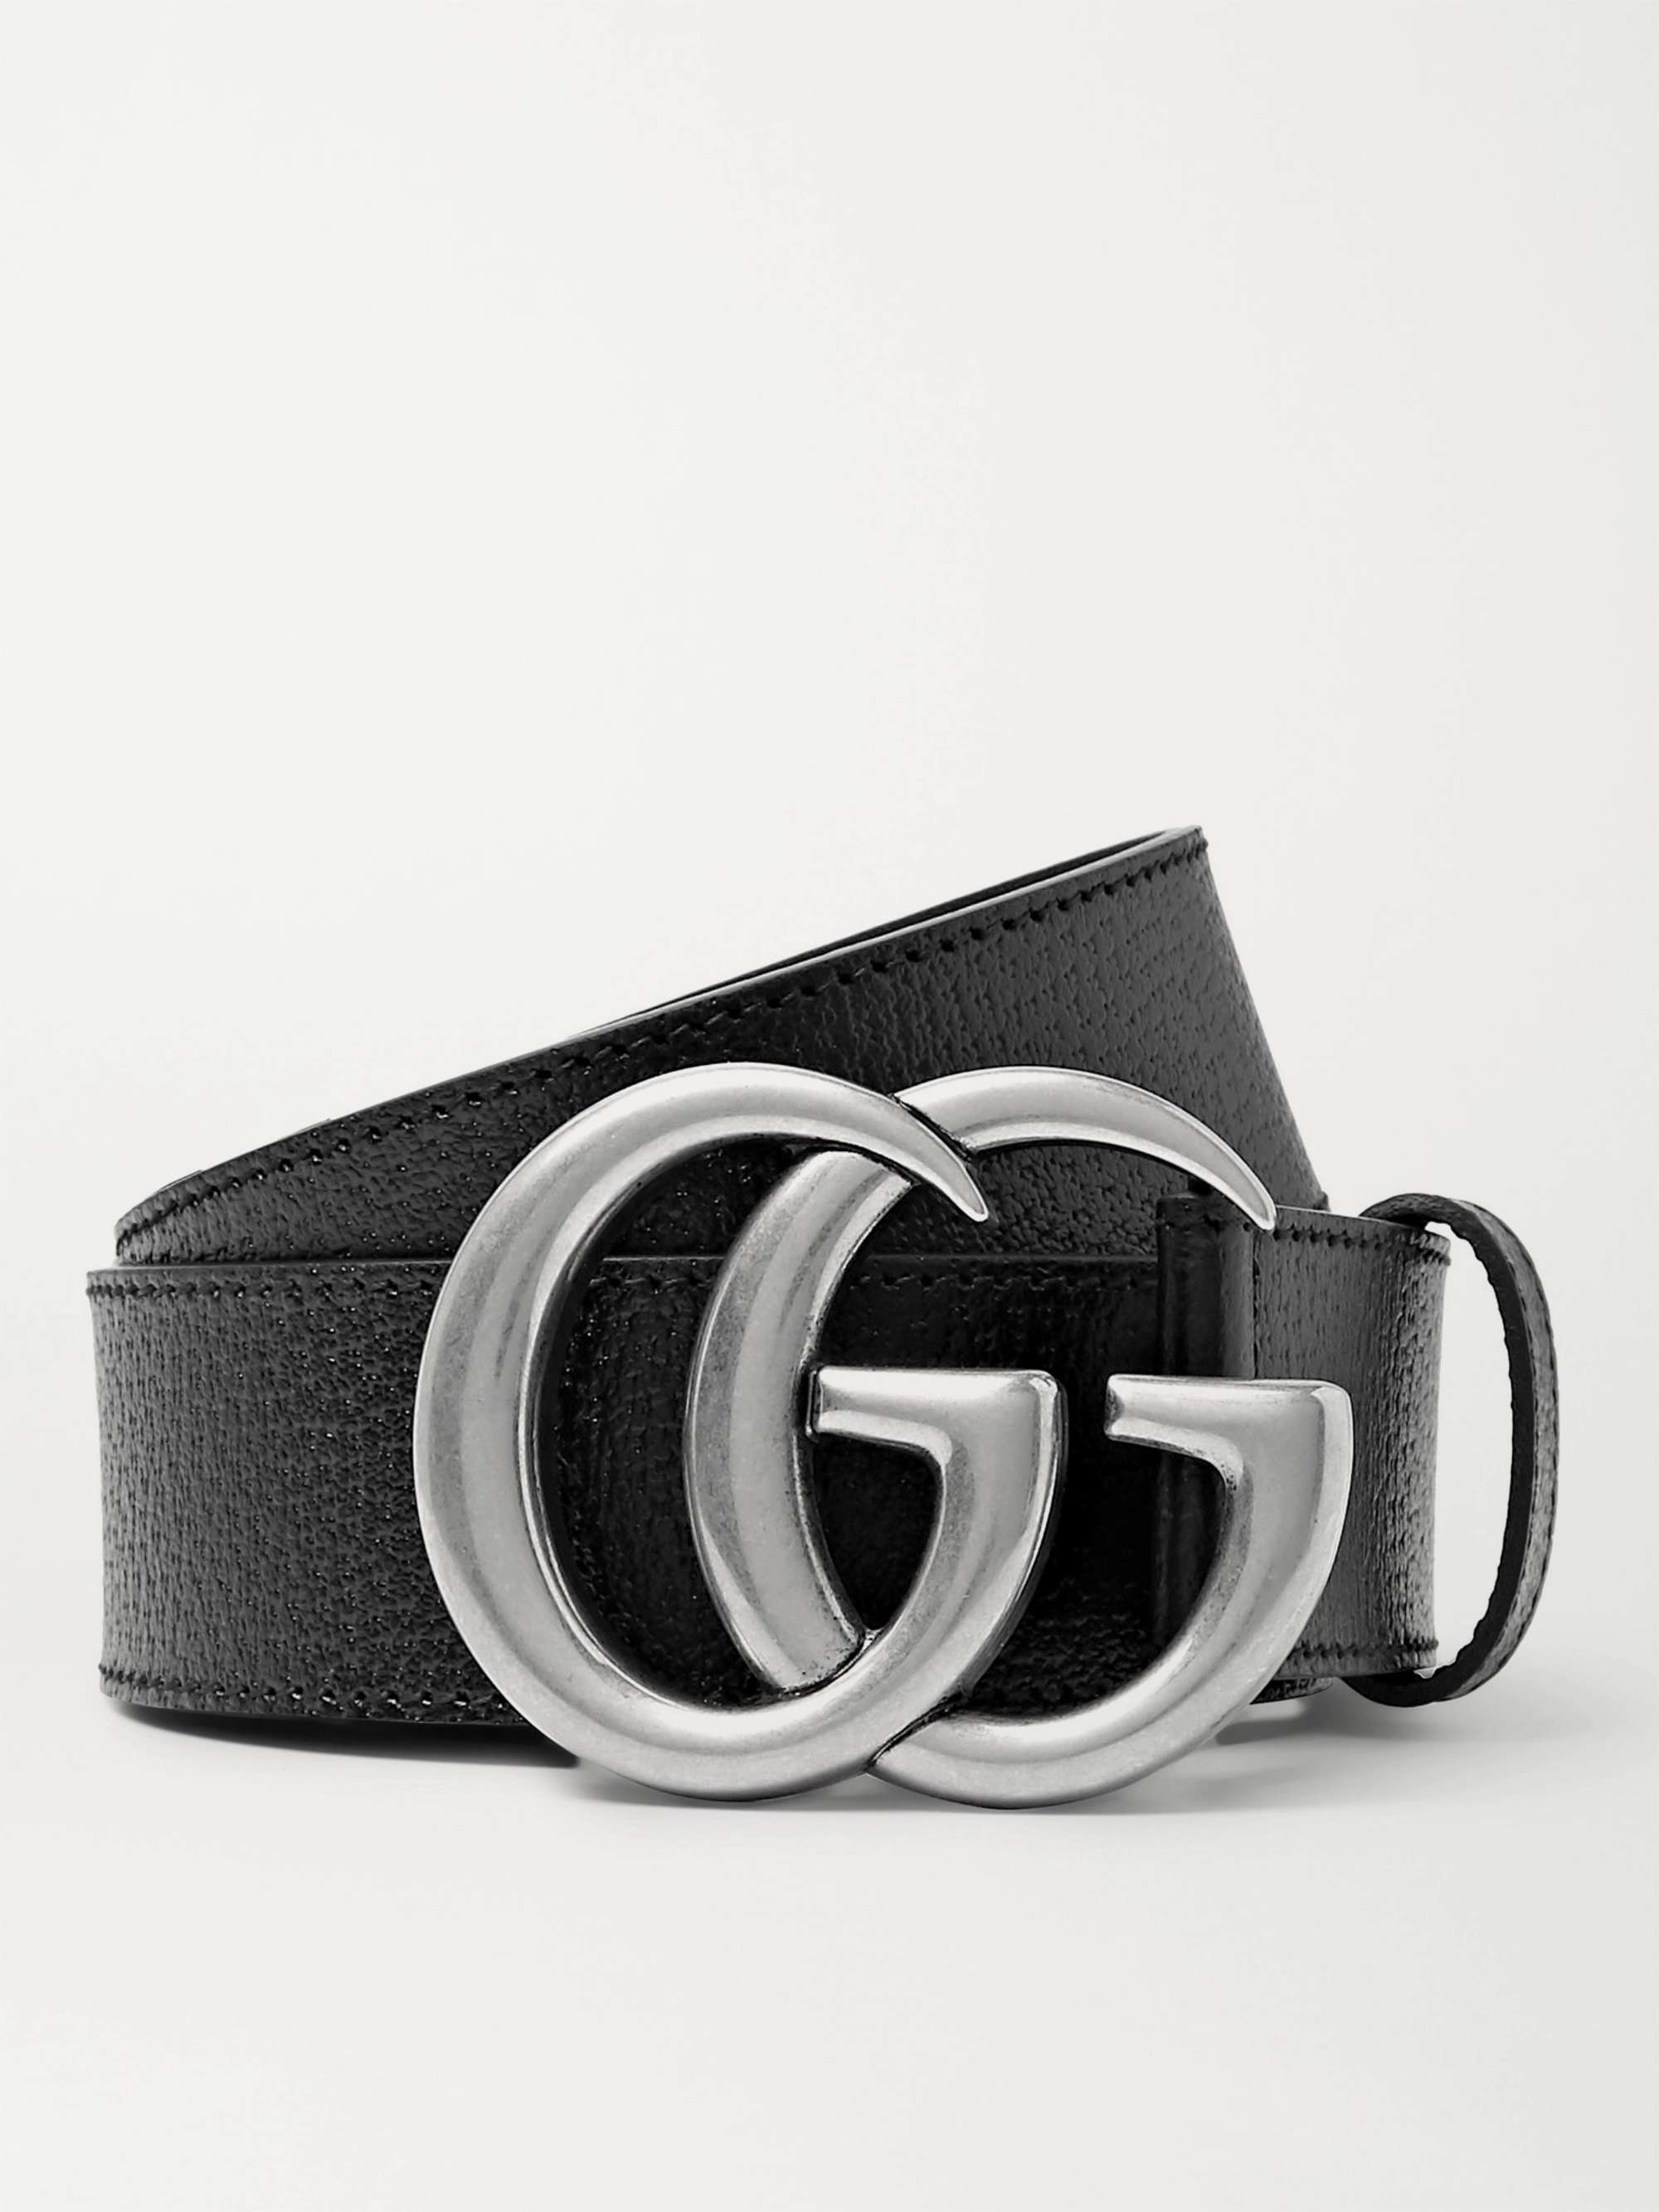 Gucci Men's Marmont Leather Belt